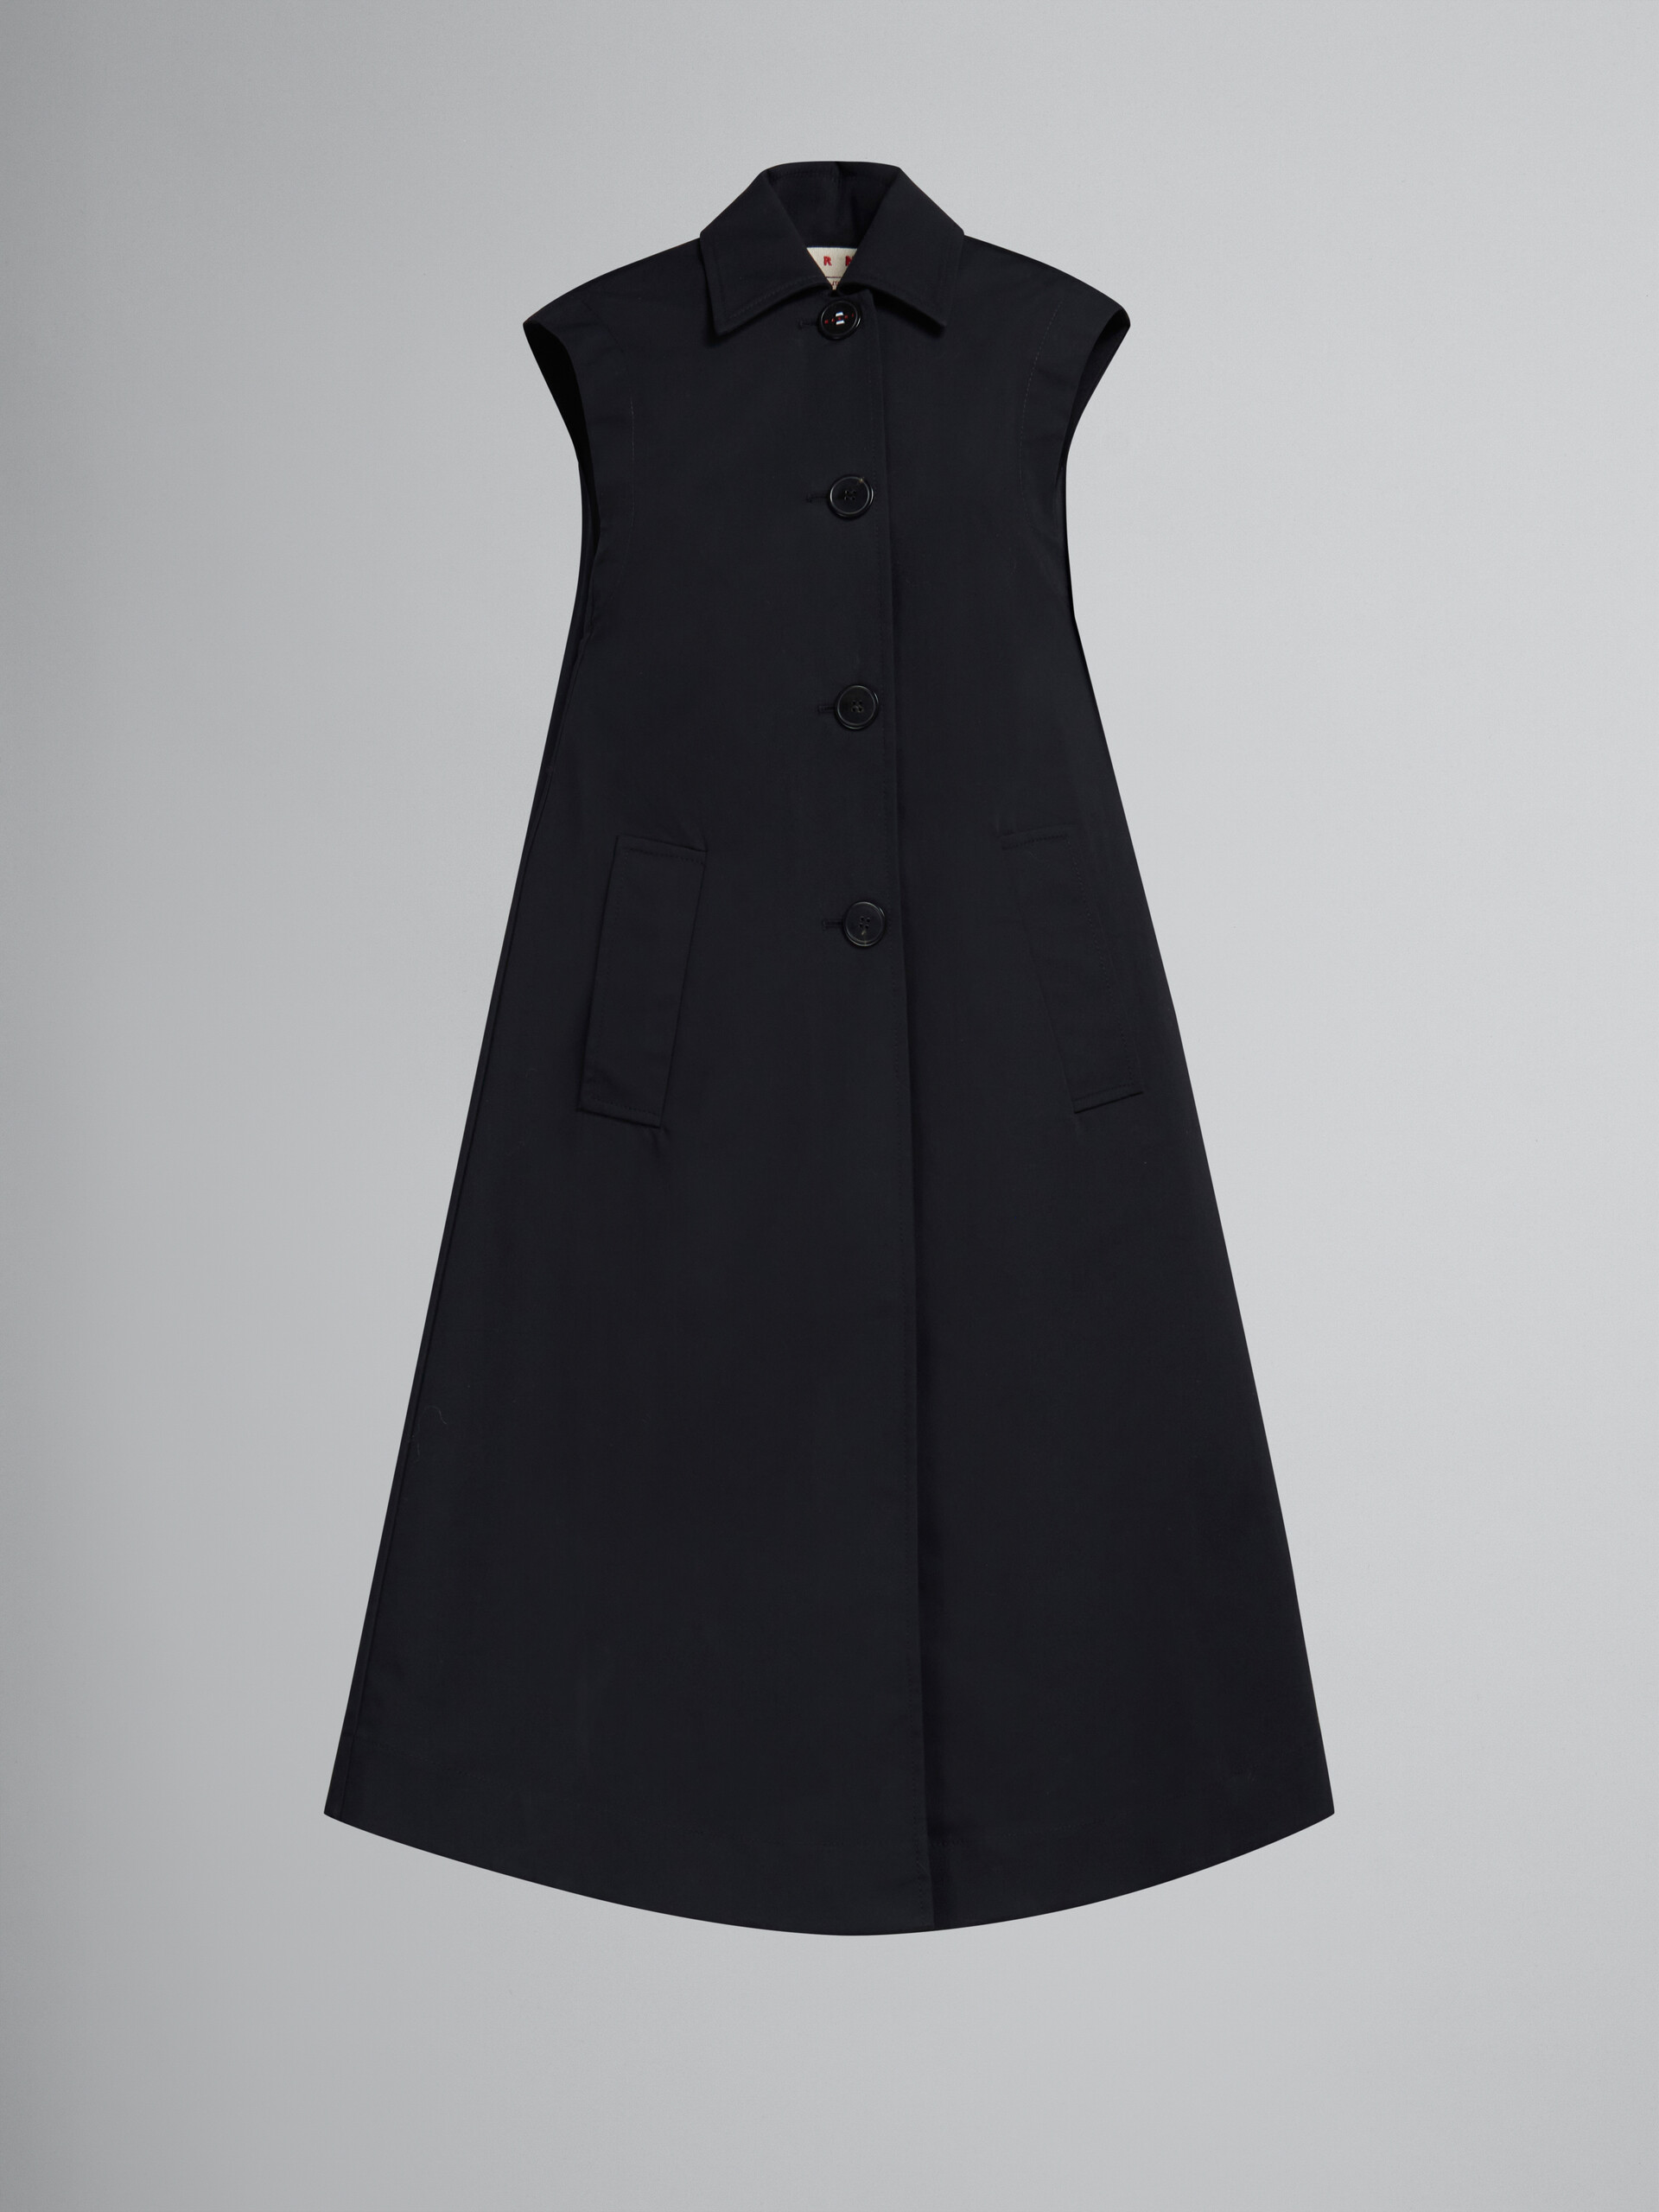 Robe cocon en coton contrecollé noir - Gilet - Image 1